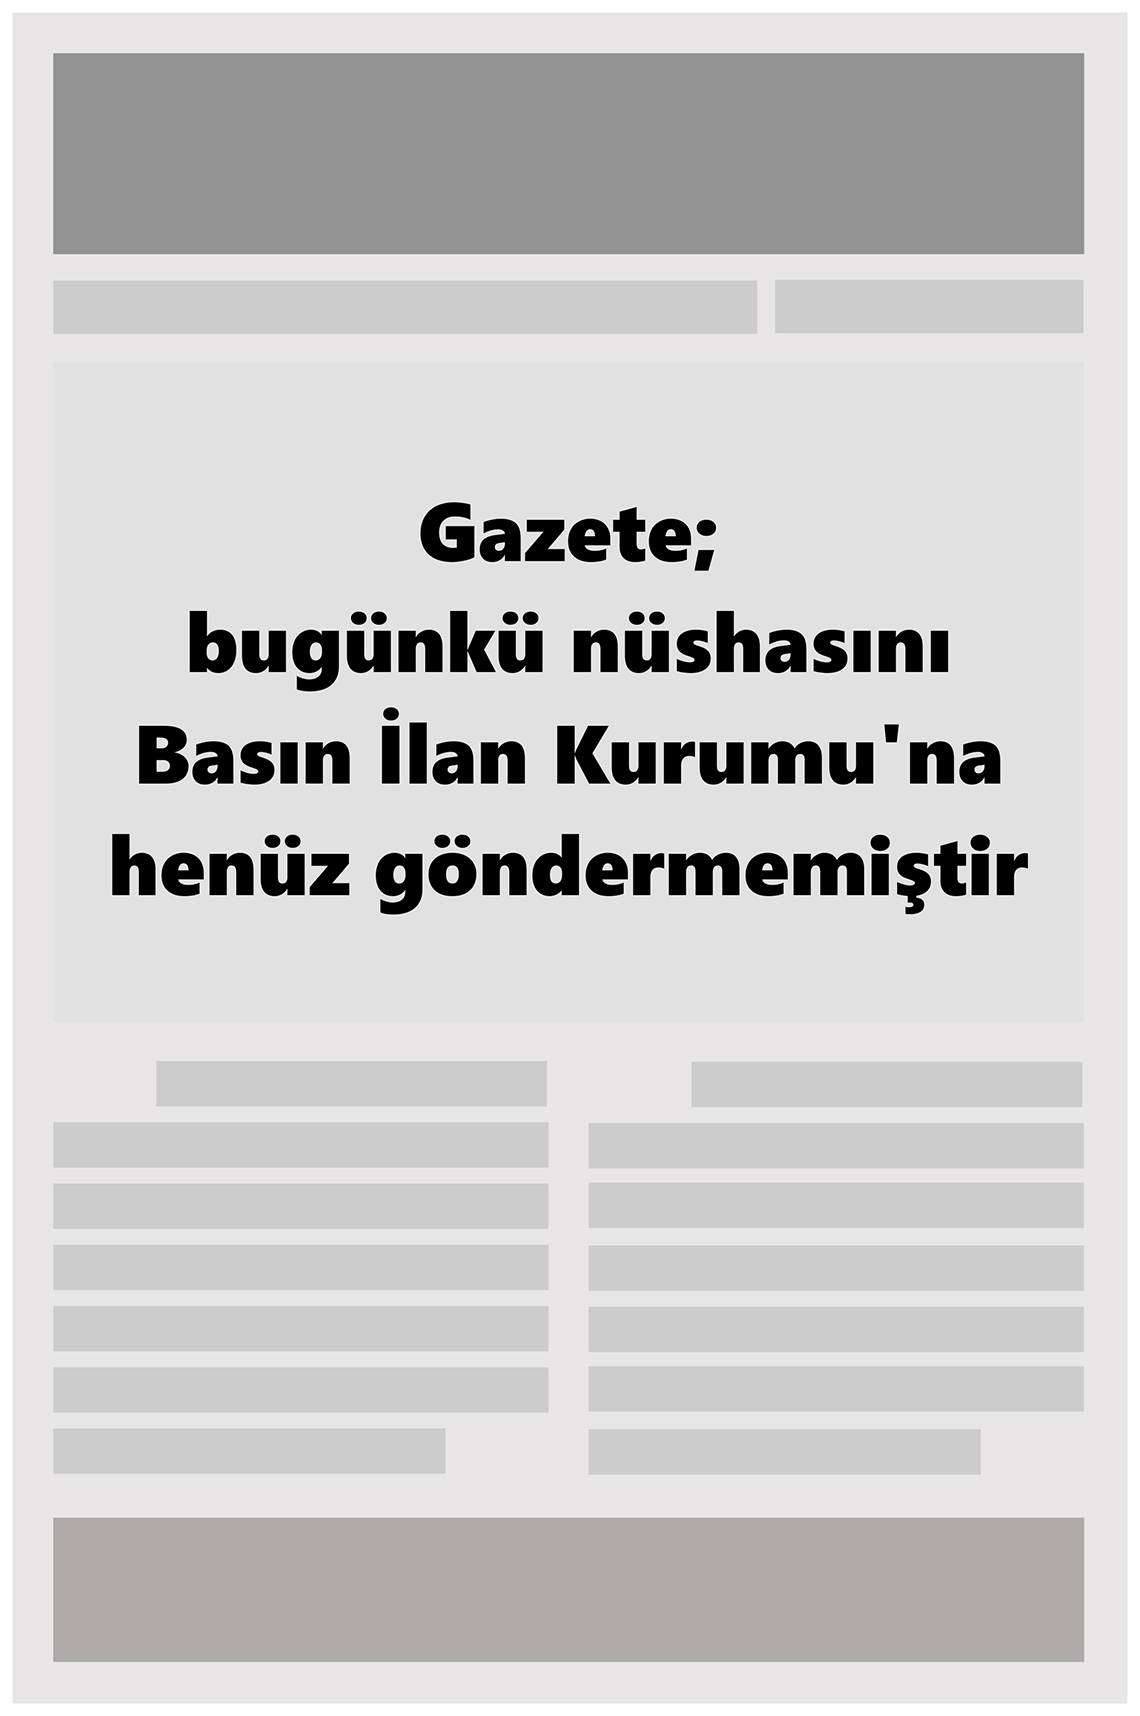 14 Ağustos 2022 Büyükşehir Merhaba GAzetesi Gazete Manşeti